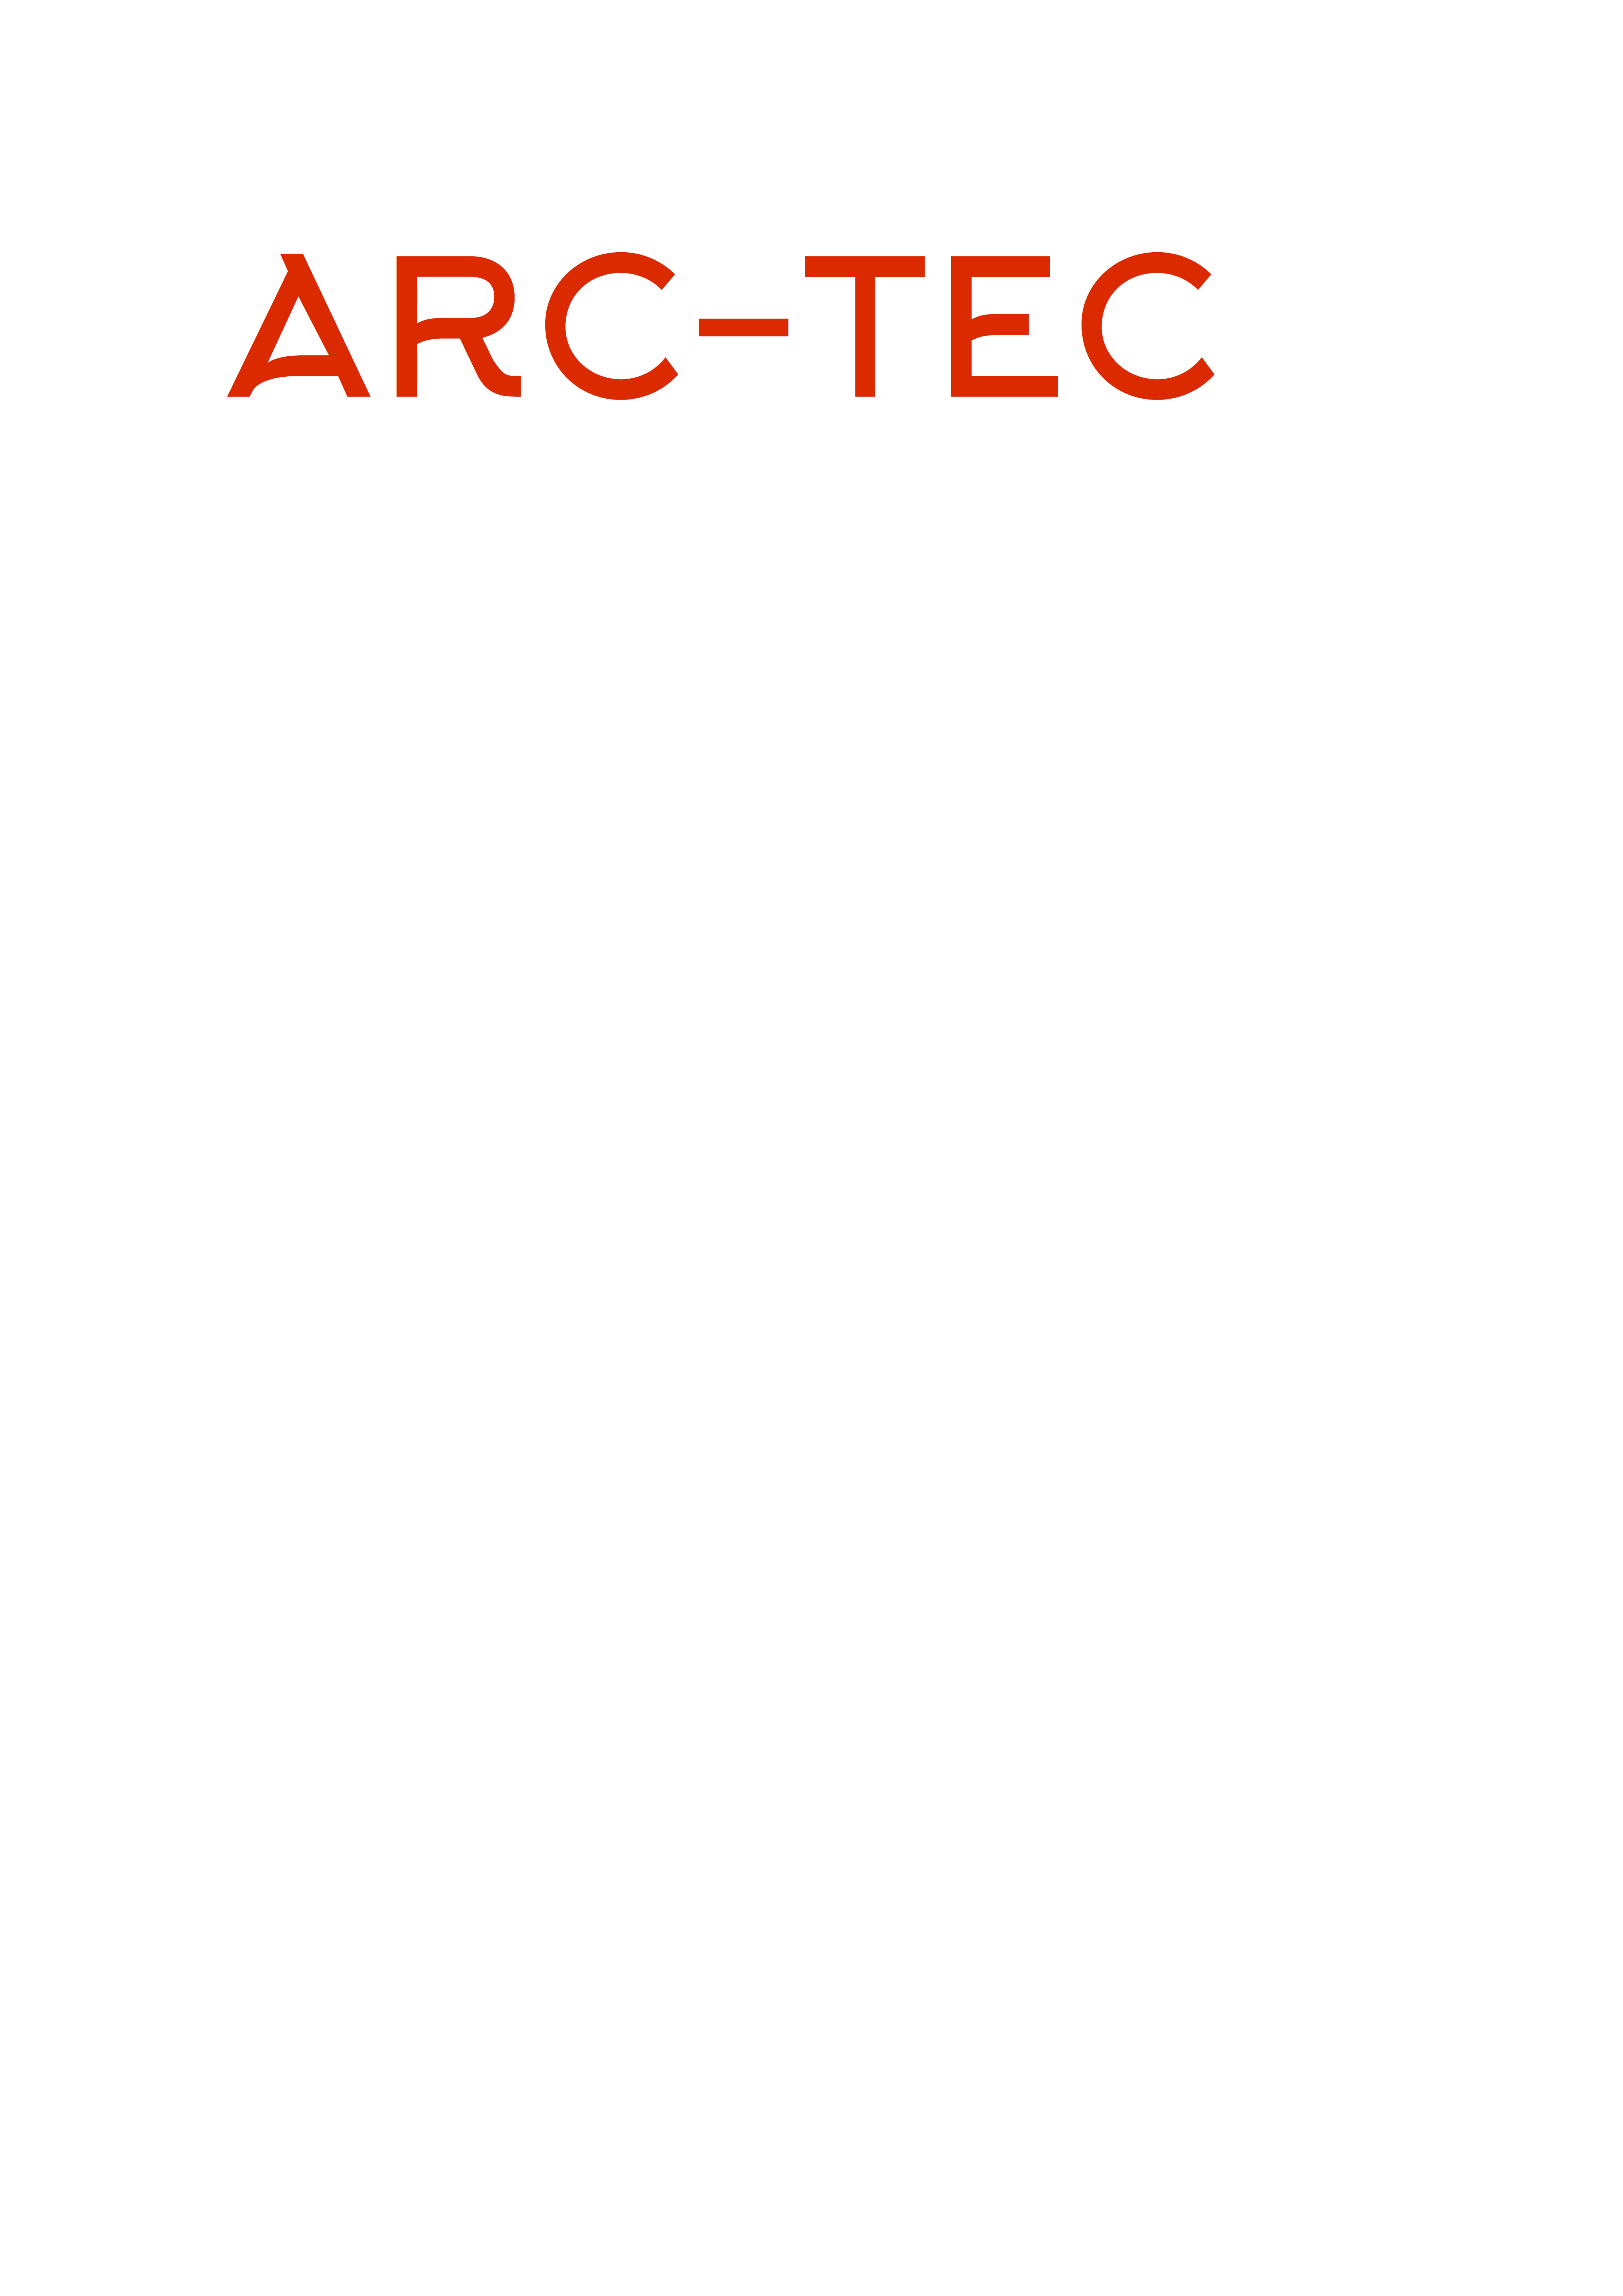 Arc Technology (Pty) Ltd logo